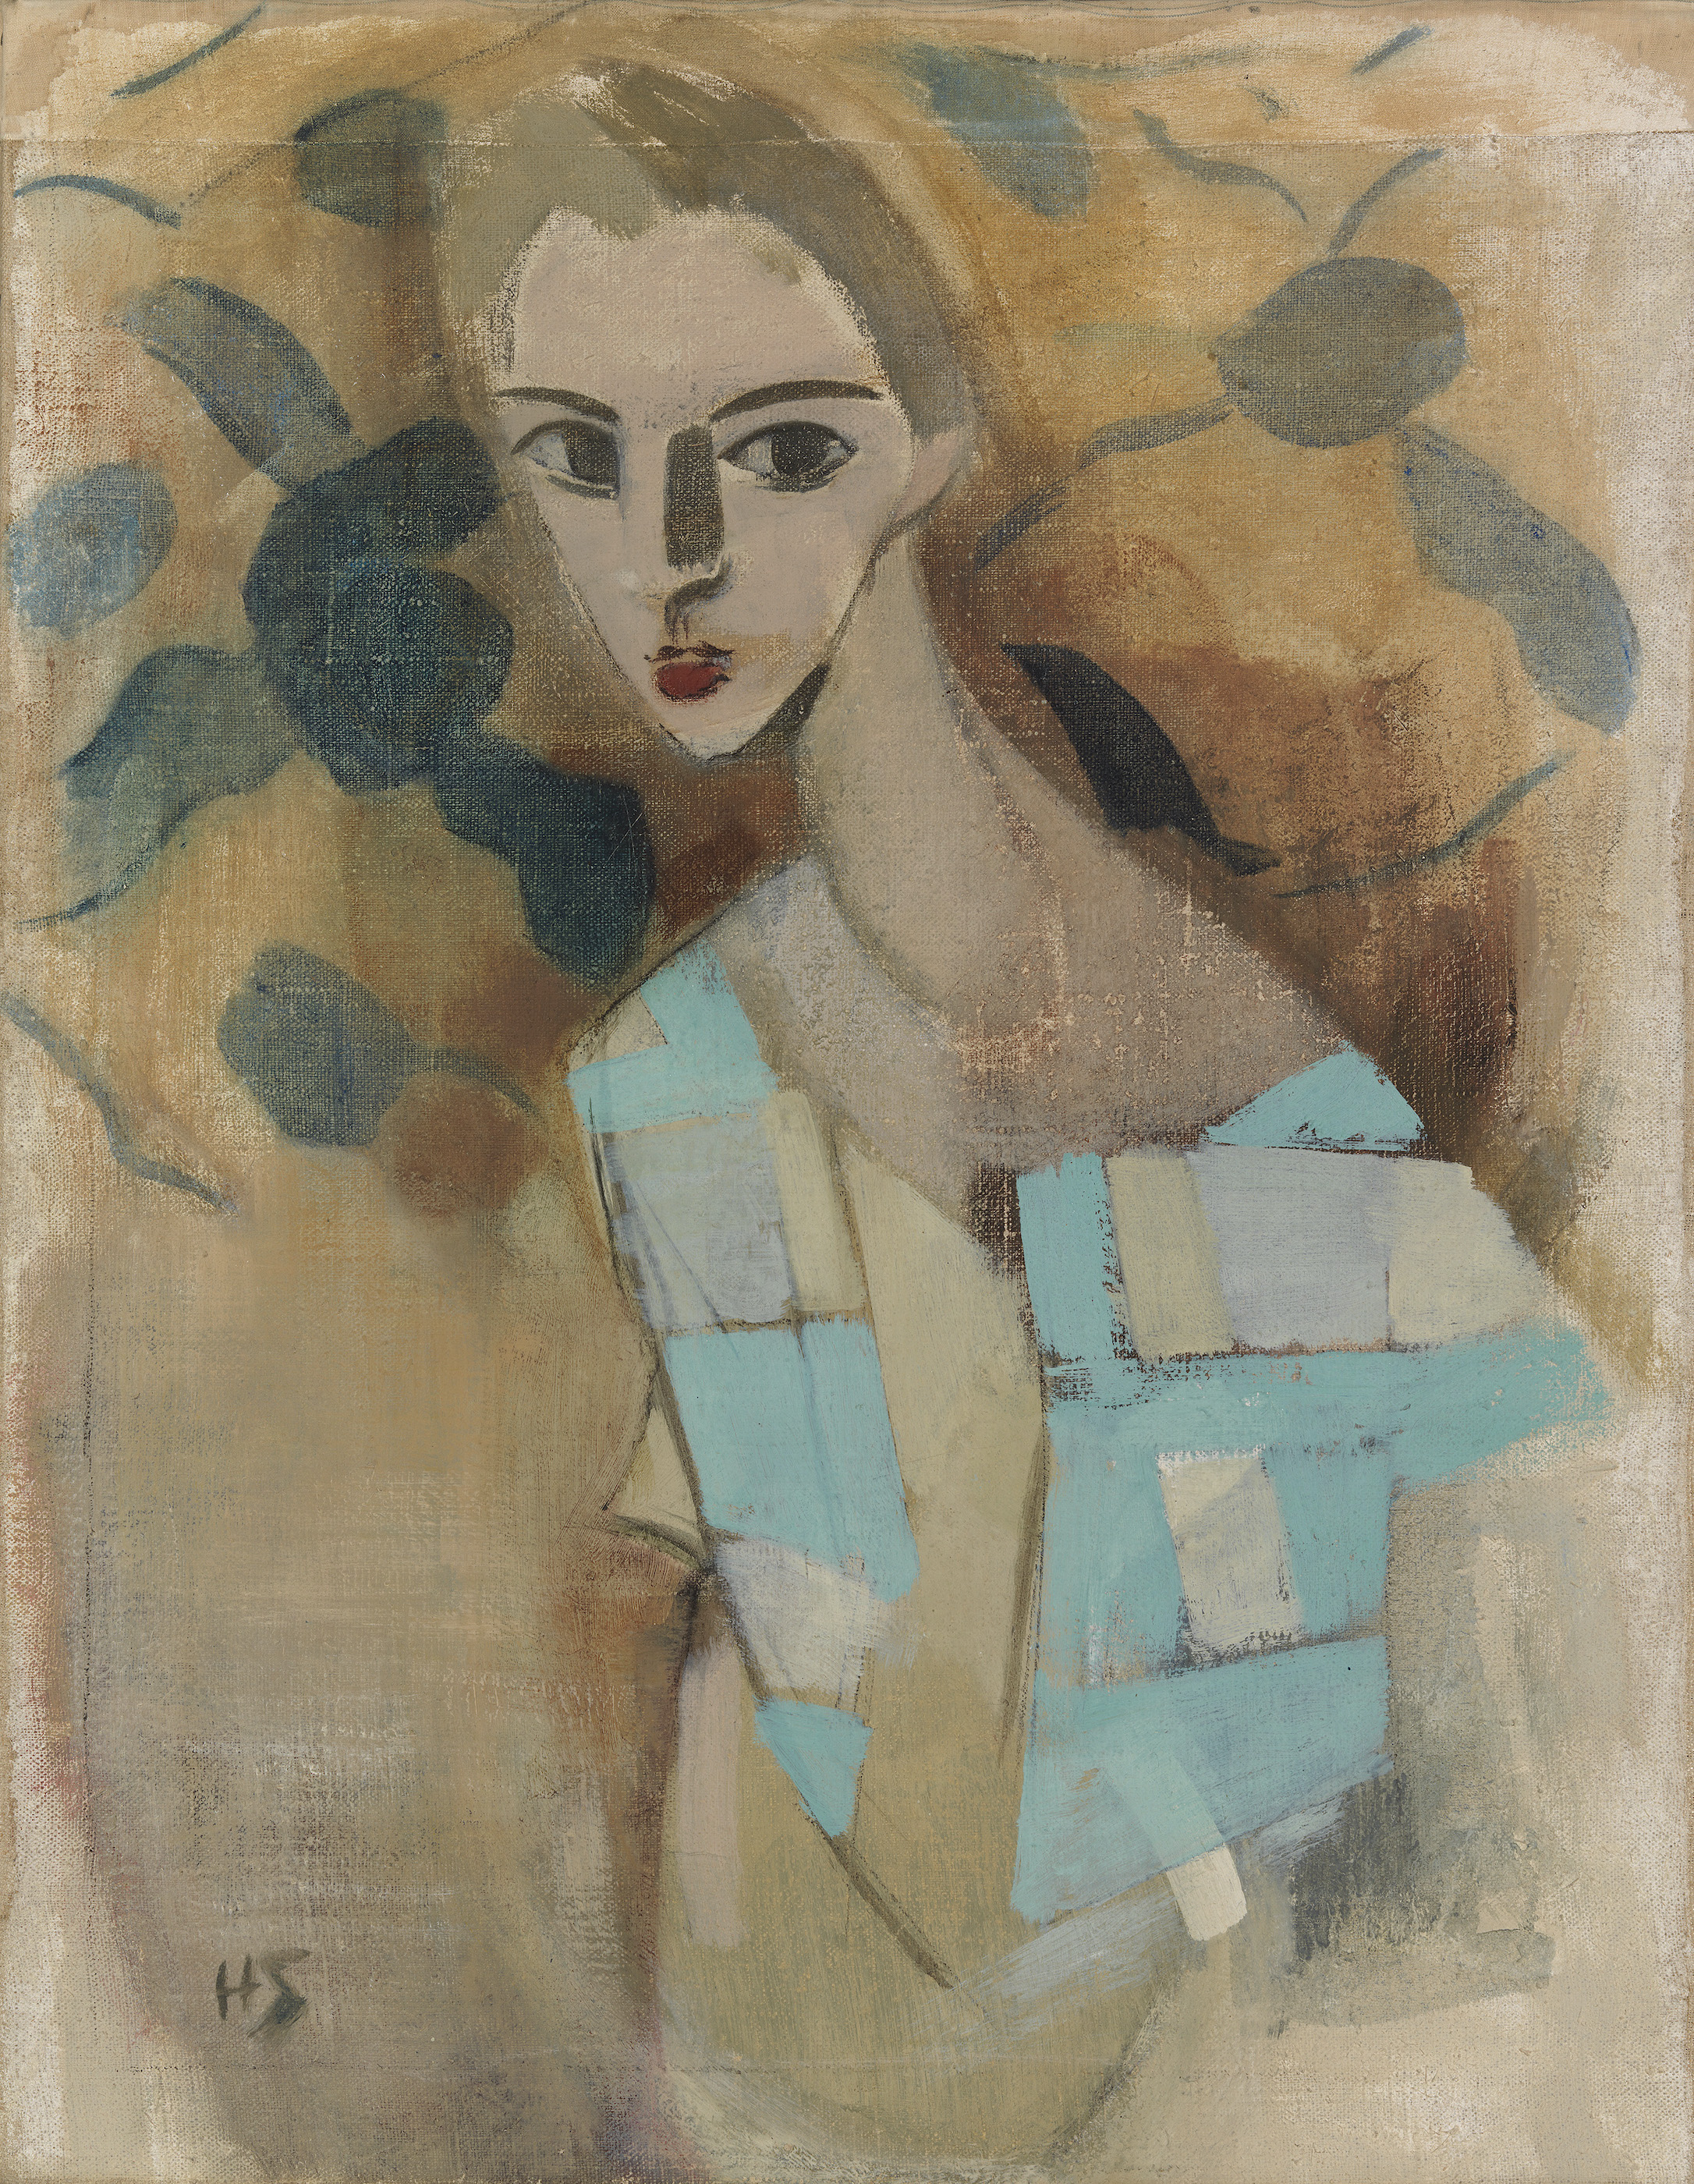 アイトクーネから来た少女 by Helene Schjerfbeck - 1927年 - 70 × 54.5 cm 